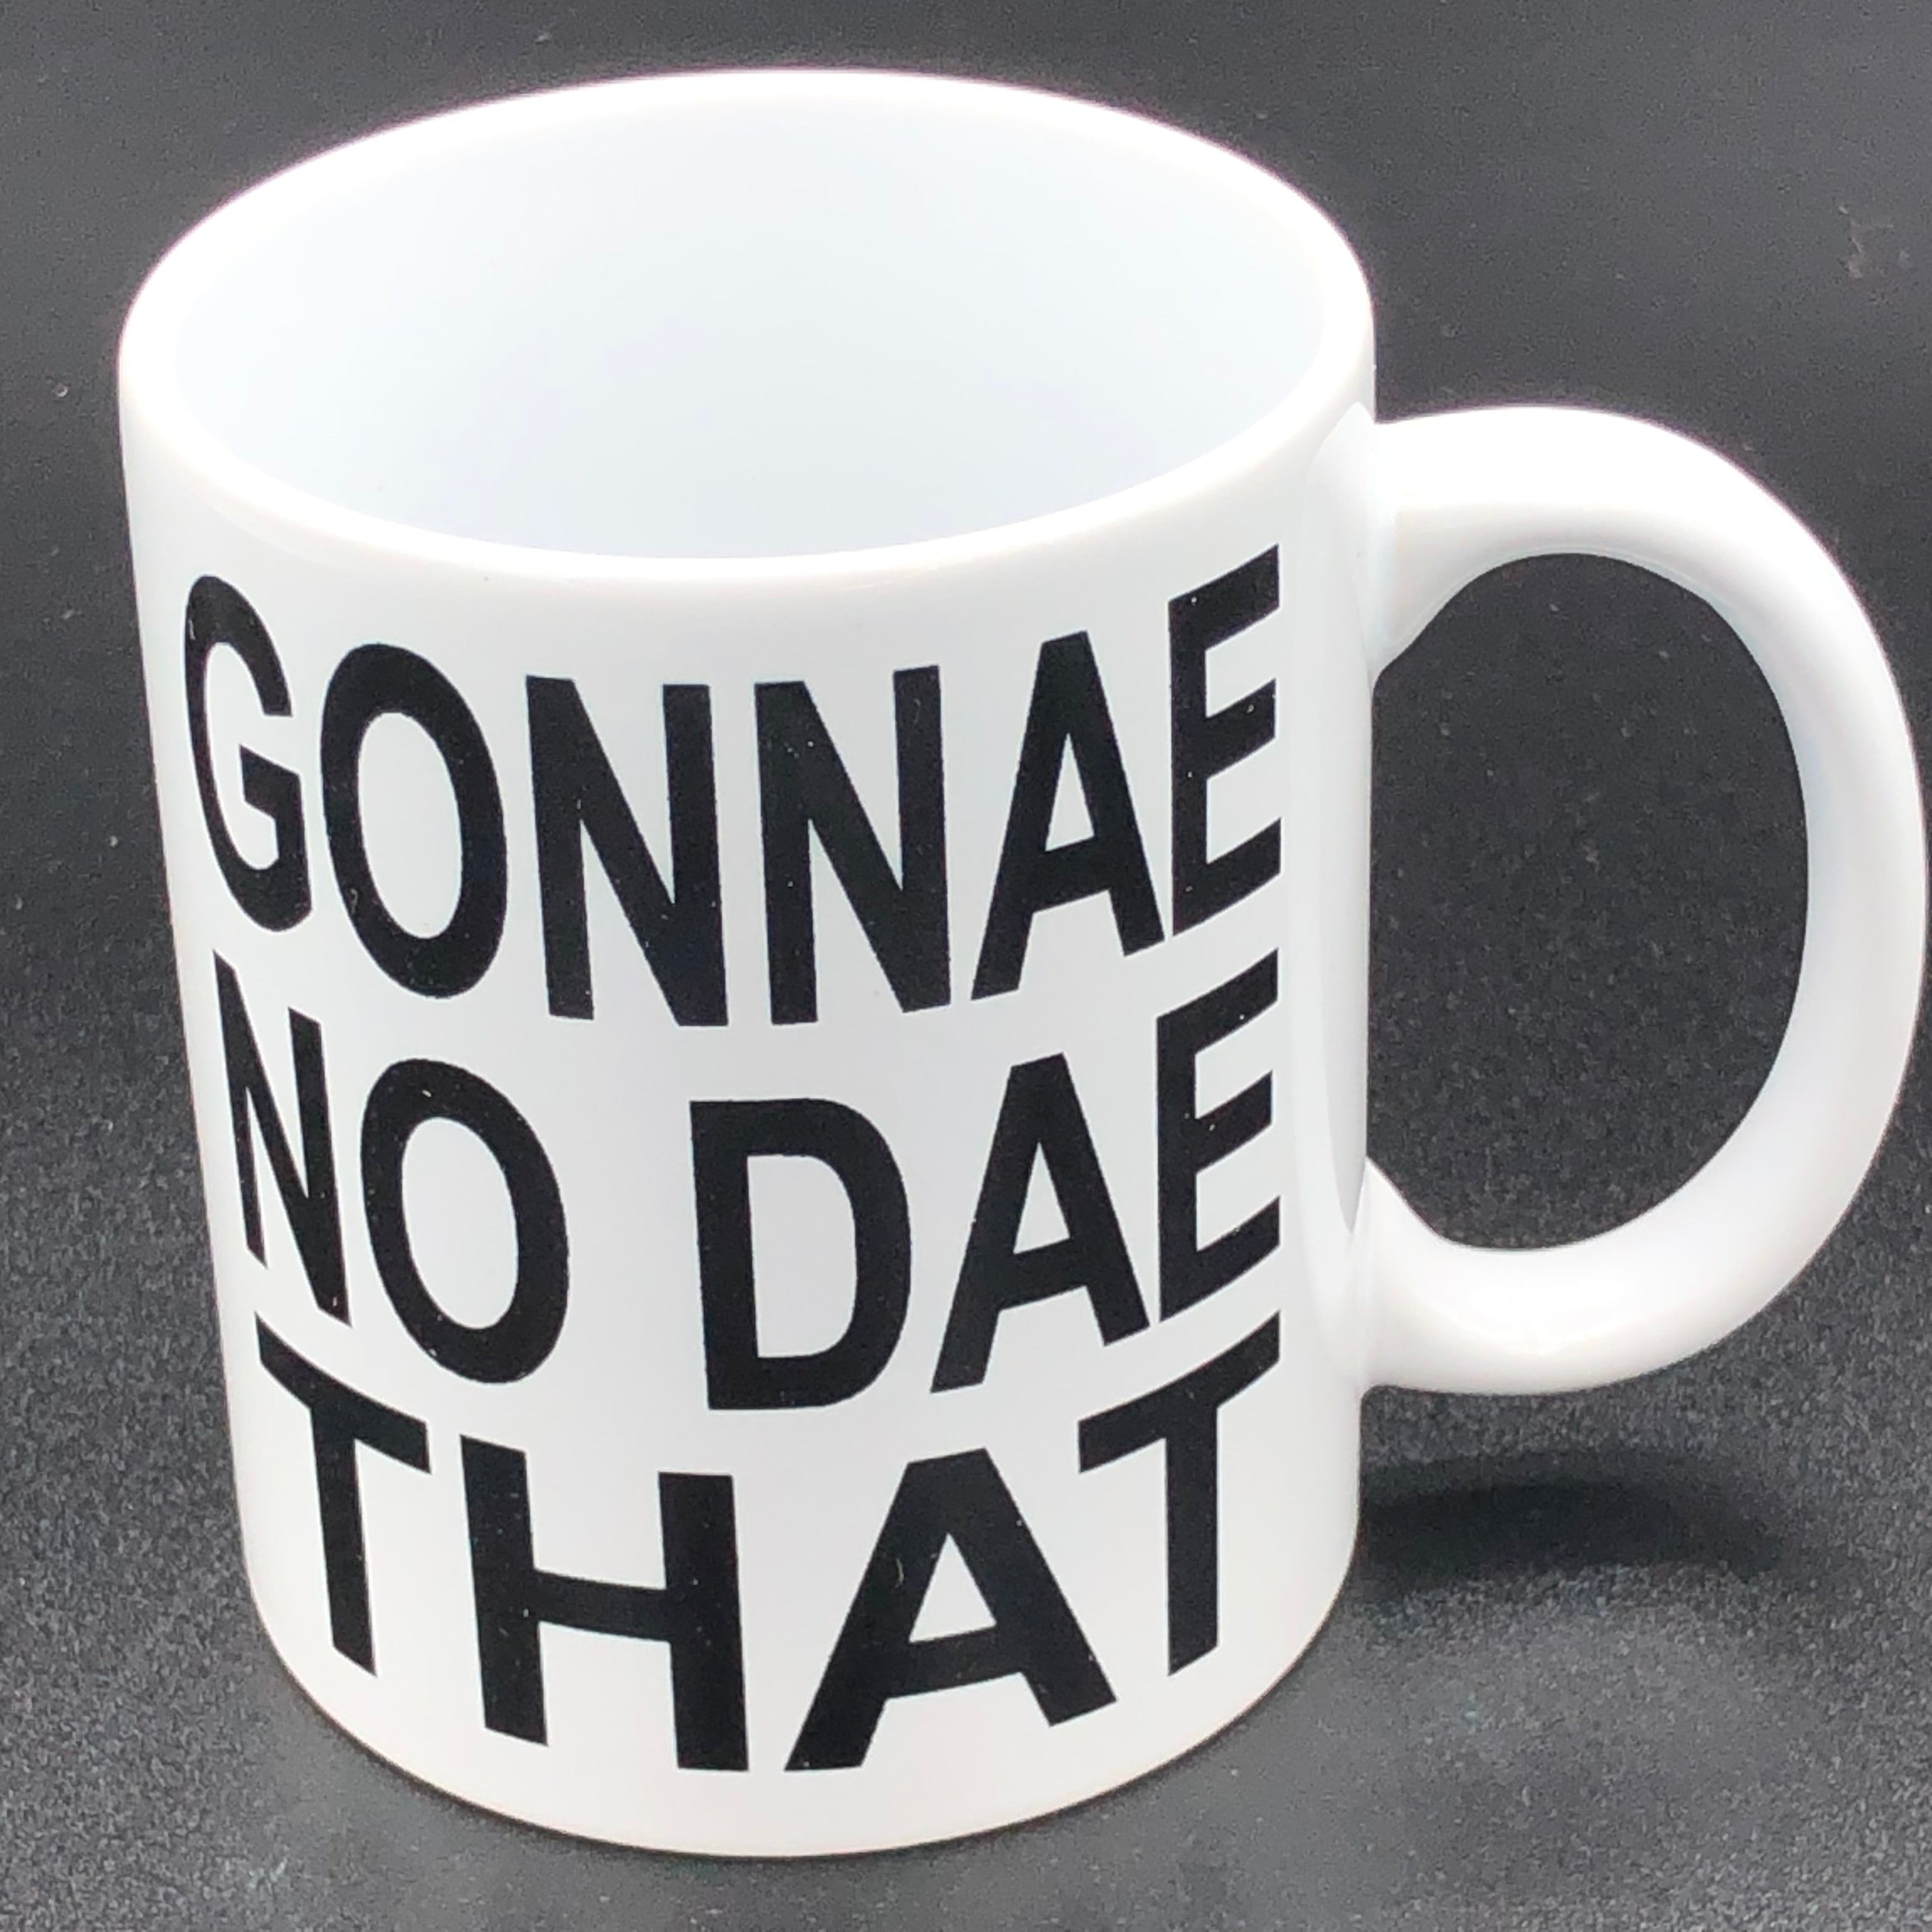 Ceramic mug - gonnae no dae that